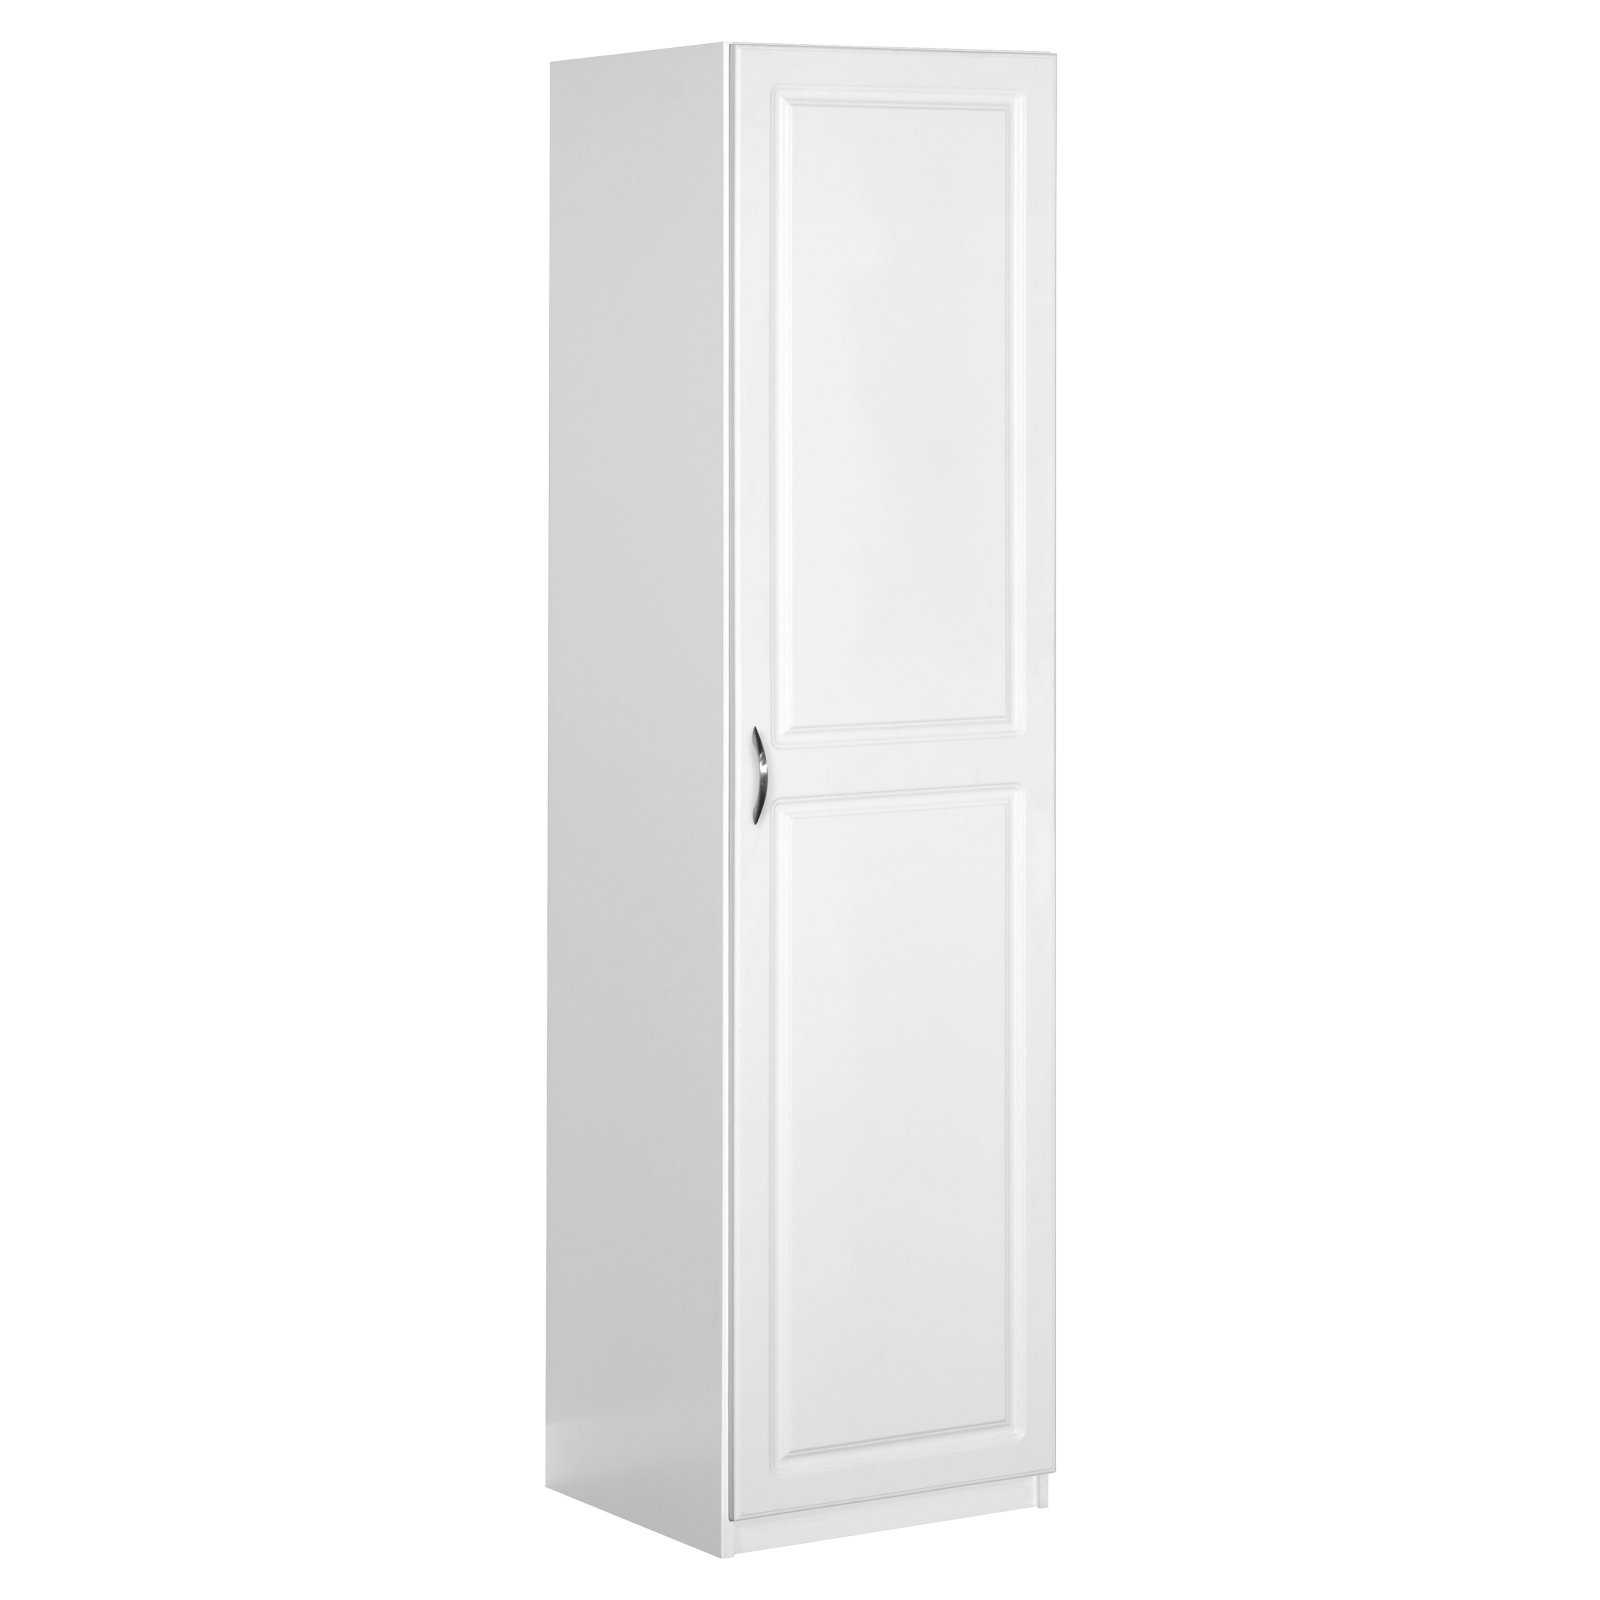 ClosetMaid Dimensions 1 Door Freestanding Storage Cabinet